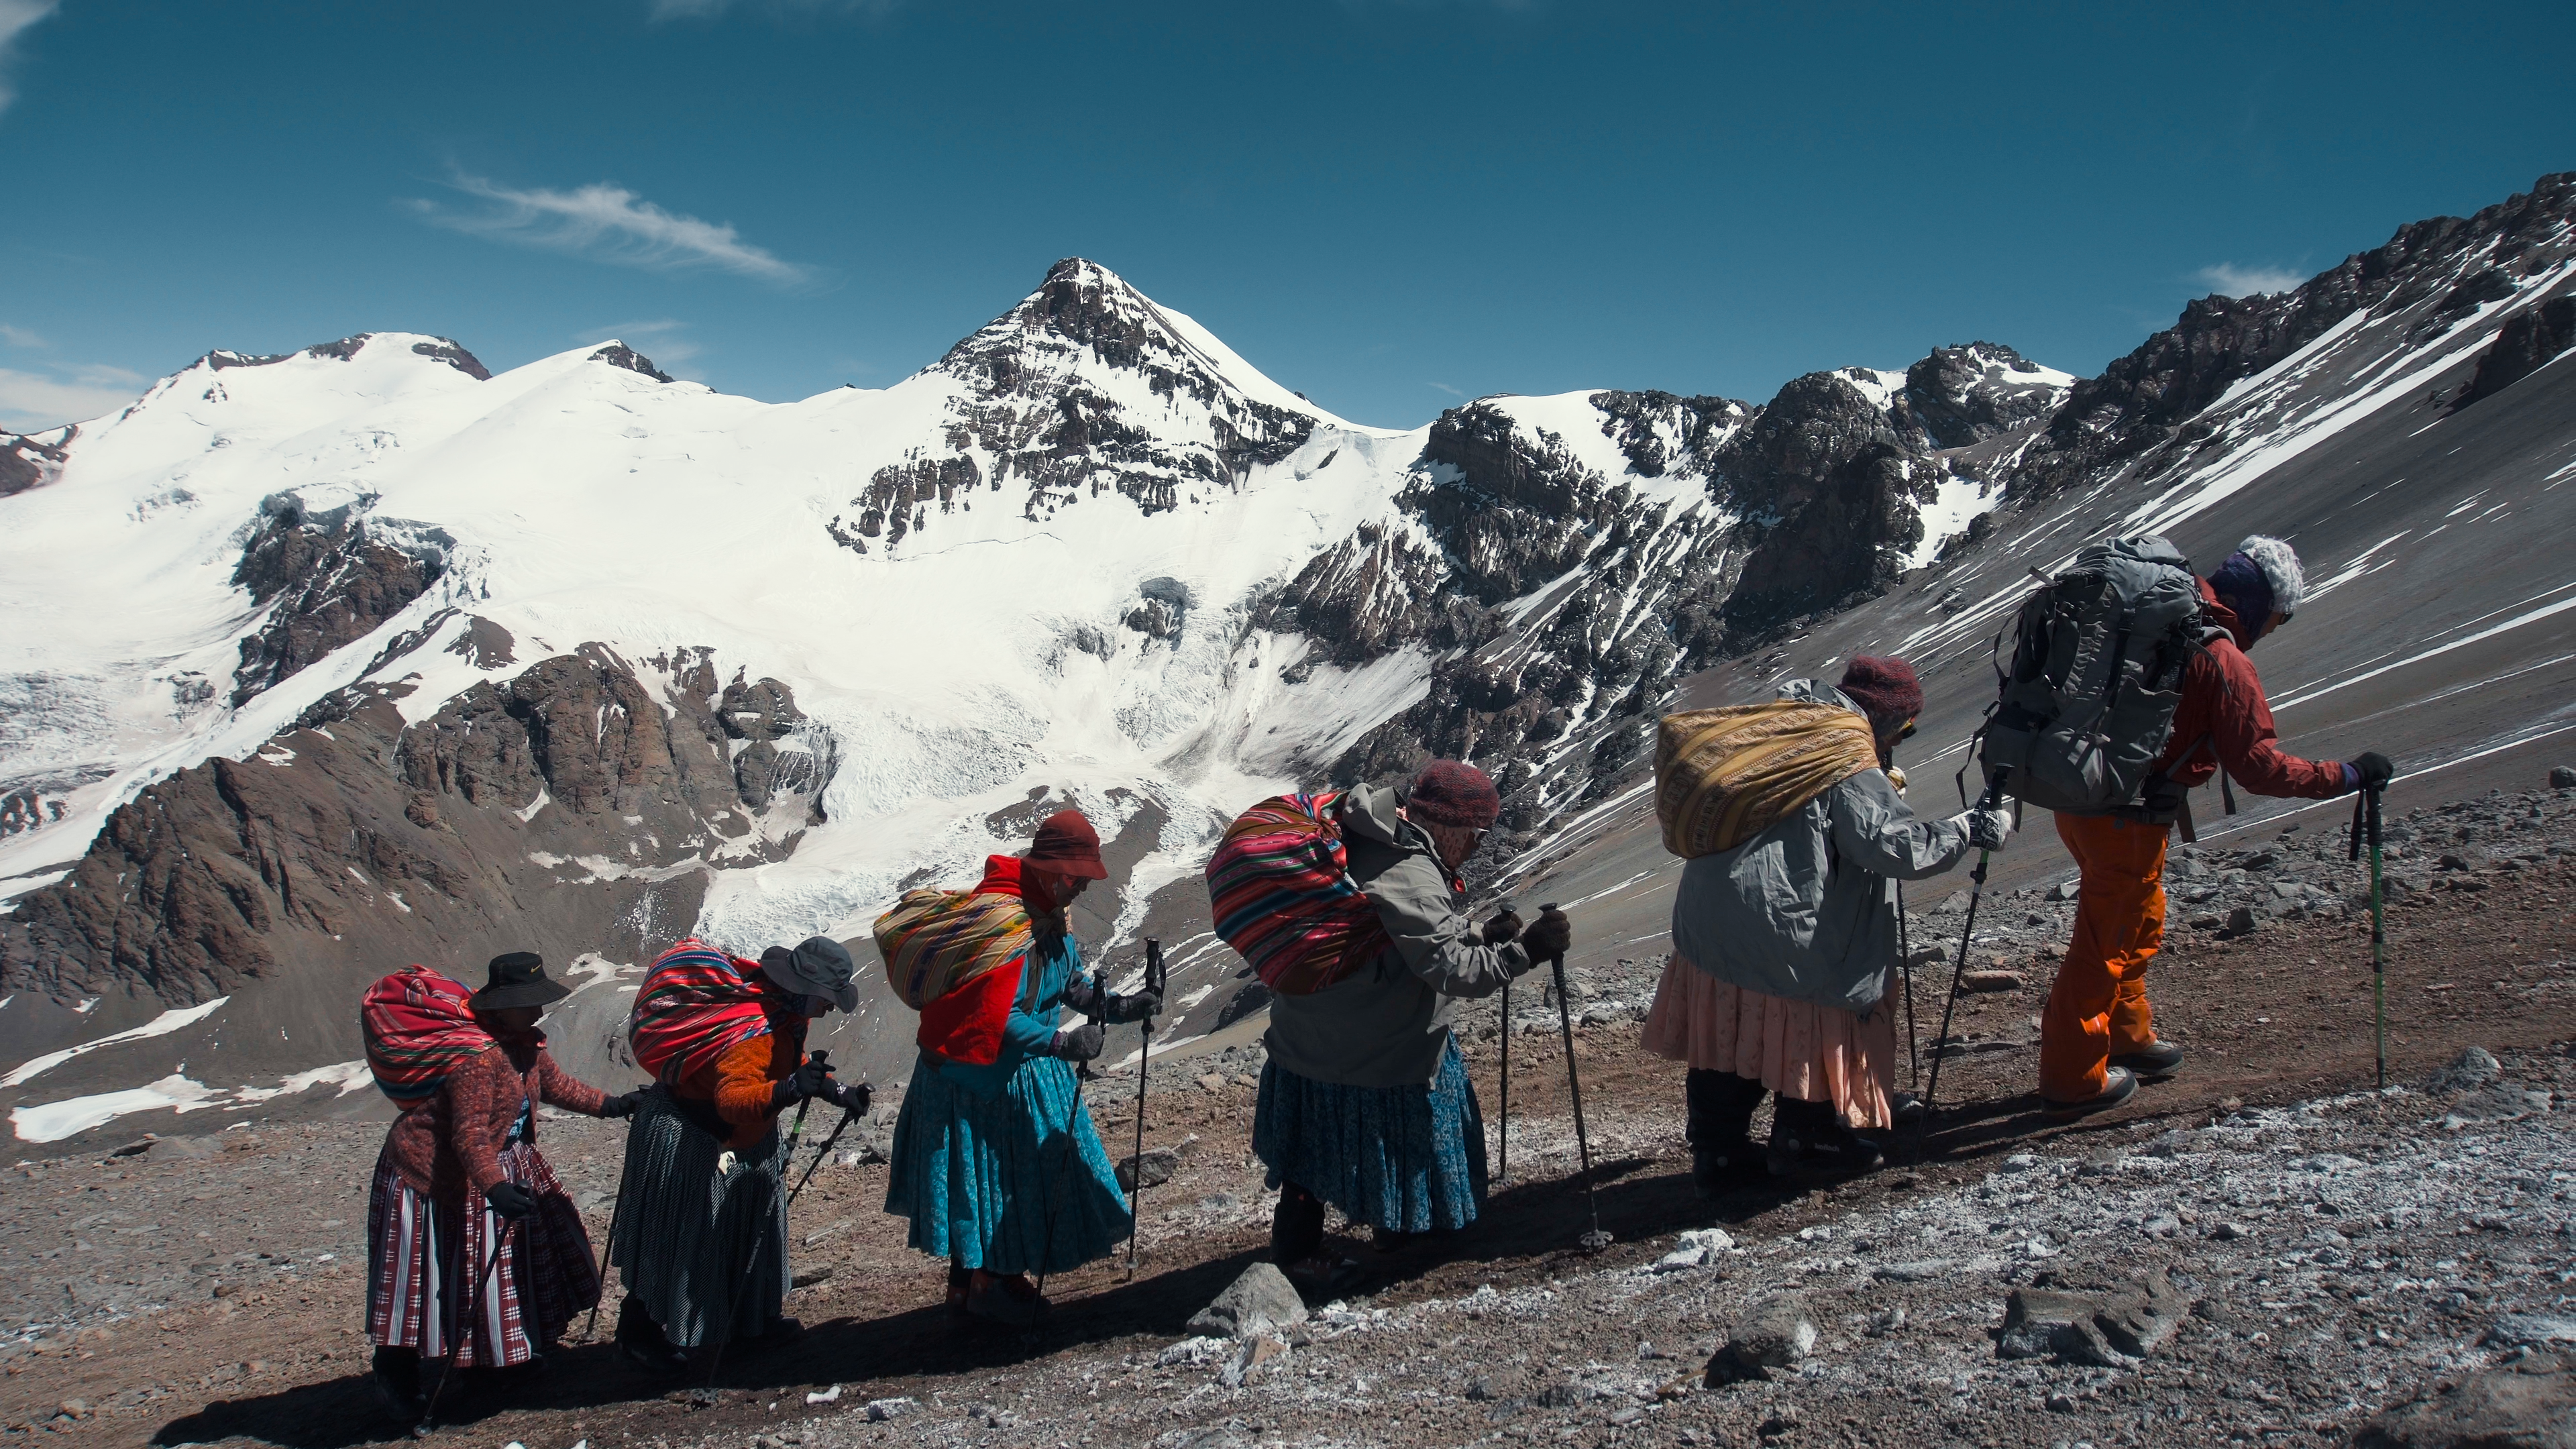 Cholitas Escaladoras: what can teach us the story of five native climbers